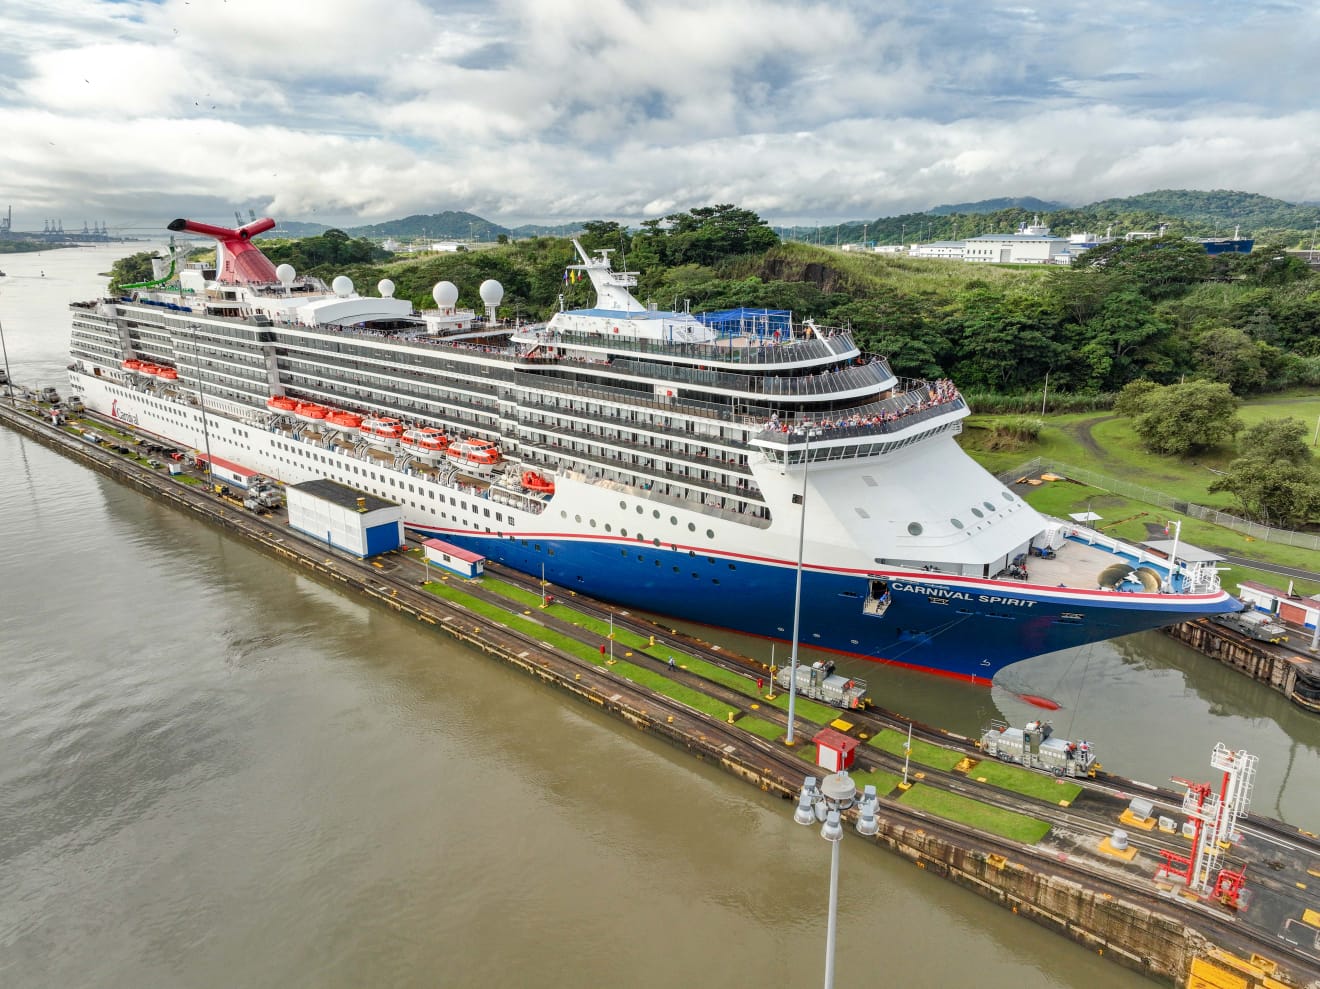 Empieza temporada de cruceros por el Canal de Panamá Destinypty